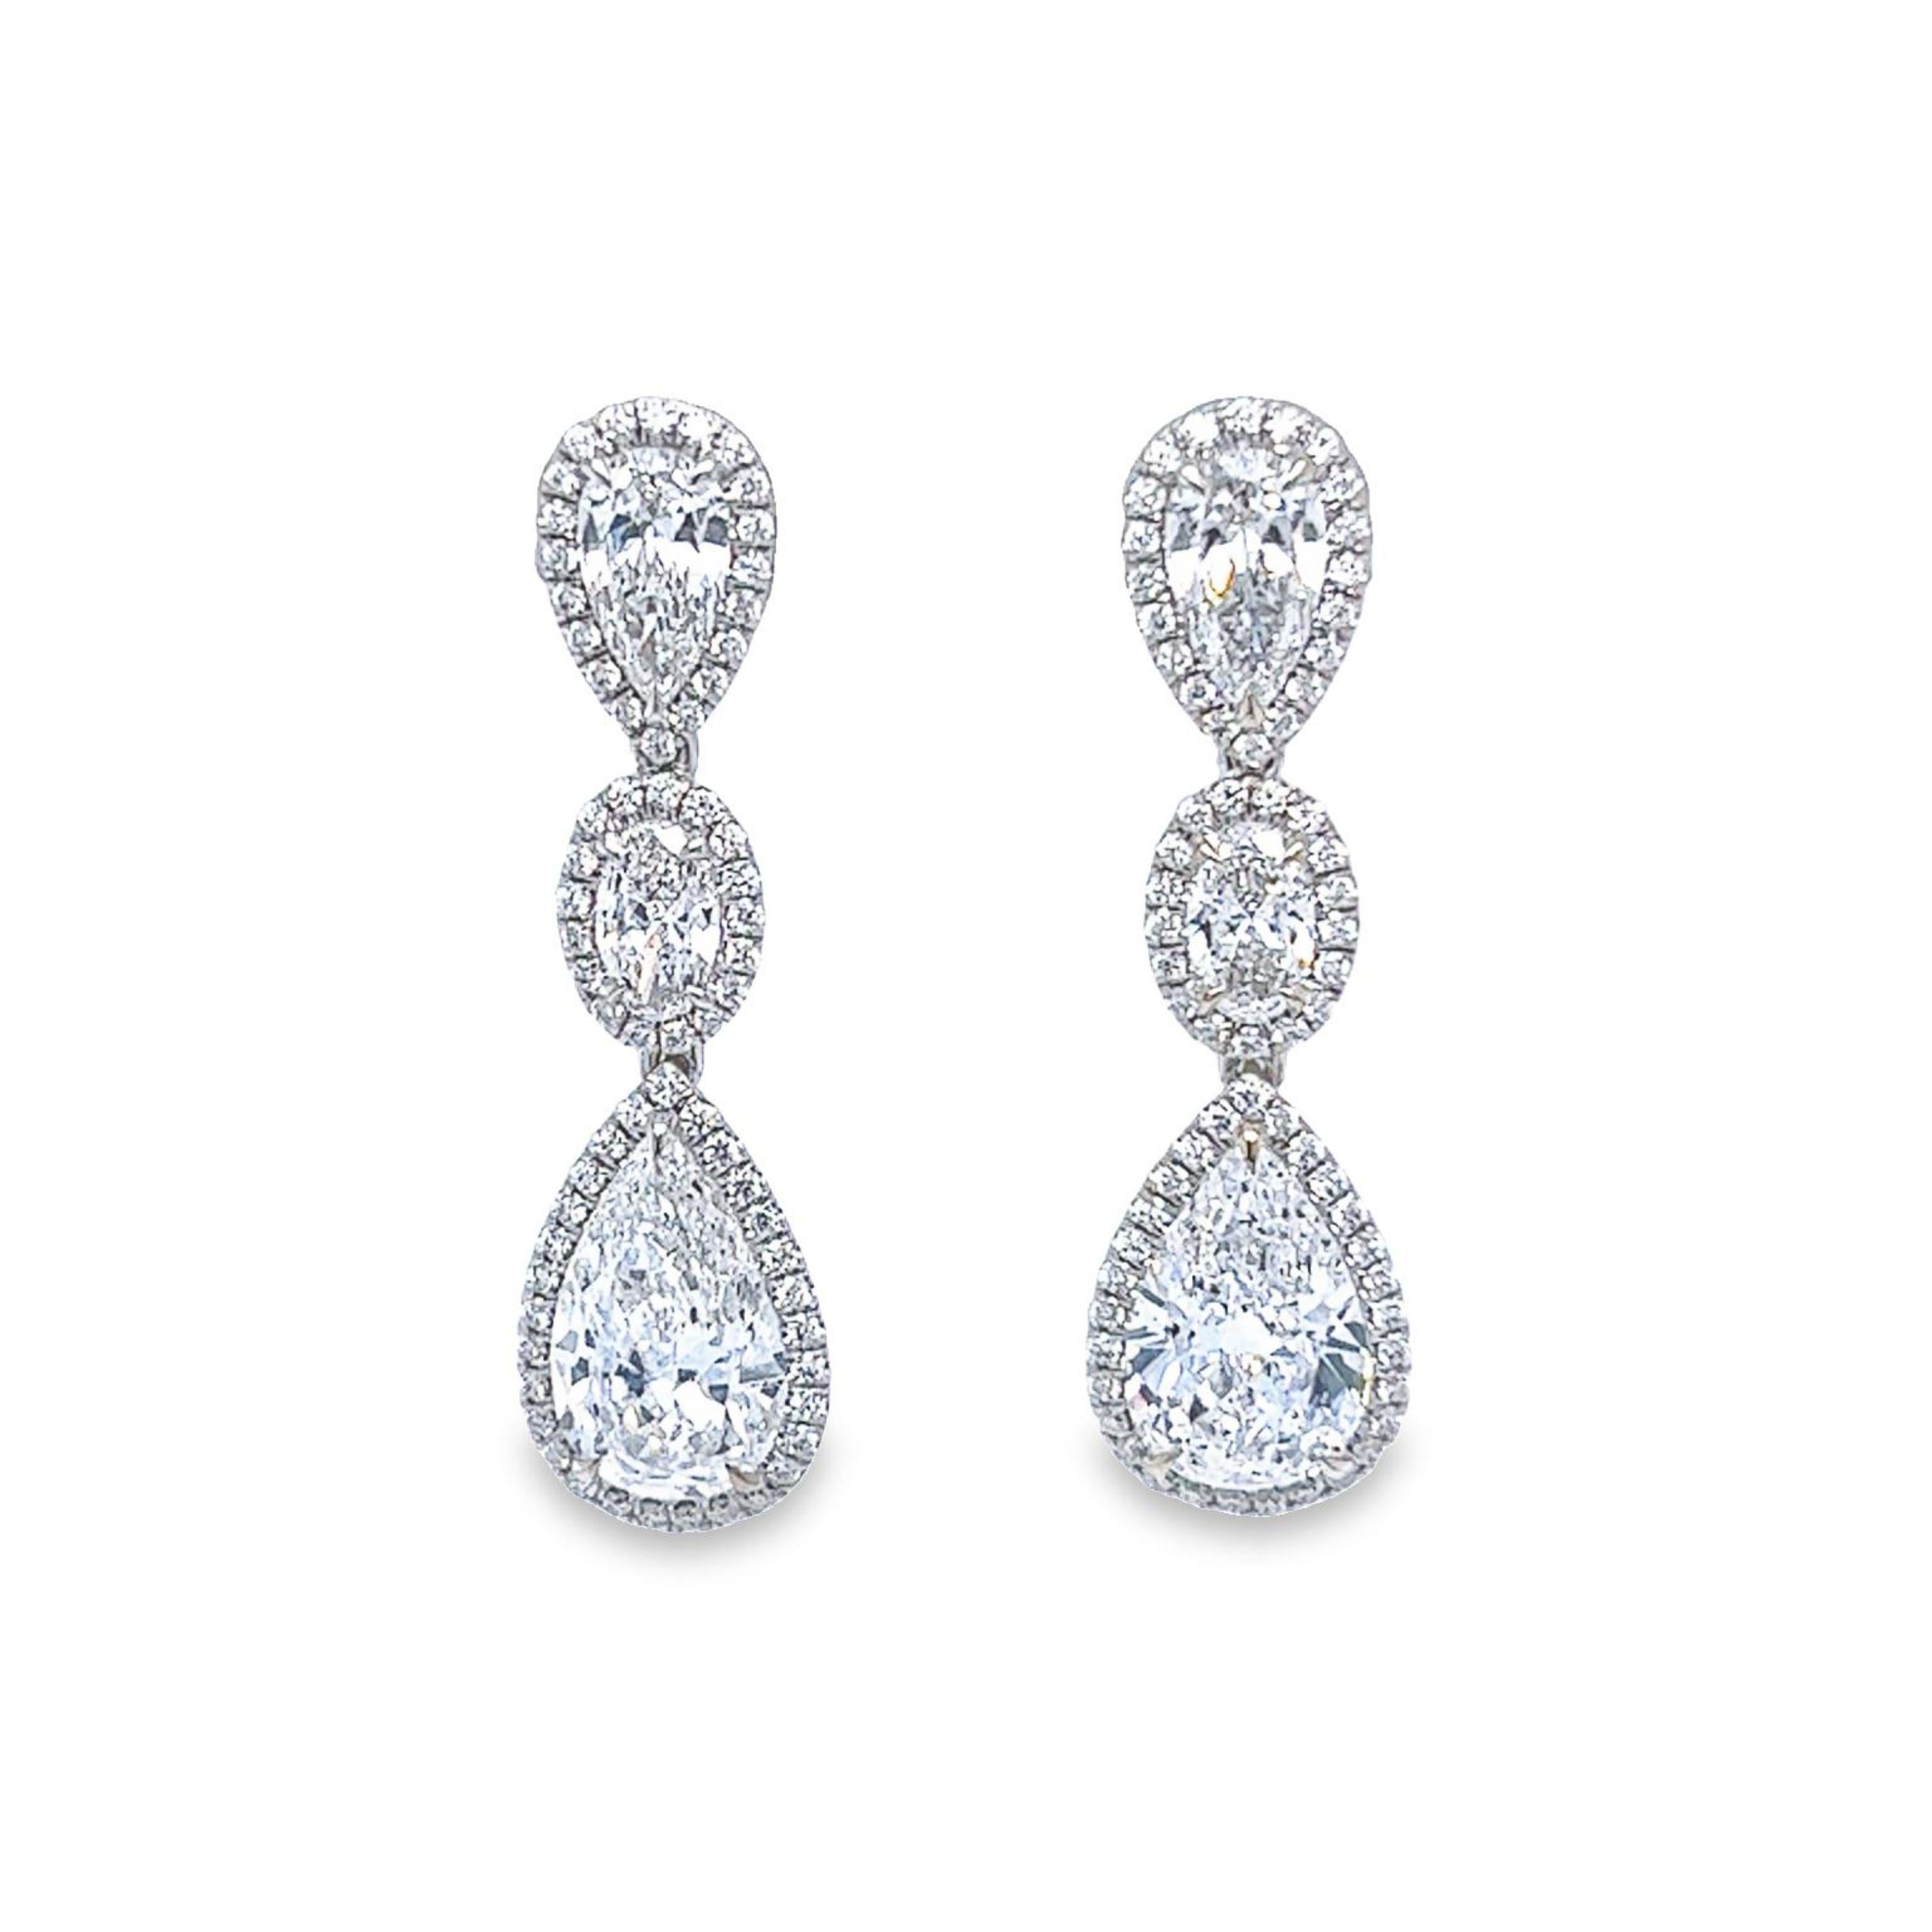 Machen Sie sich bereit für eine Nacht mit diesem Kiefer fallen weißen Diamanten Pear & Oval Form Ohrringe F in Farbe SI2 Klarheit. Diese wunderschönen, 3-stufigen, leichten Ohrringe sind in 18 Karat Weißgold gefasst und von einem wunderschönen